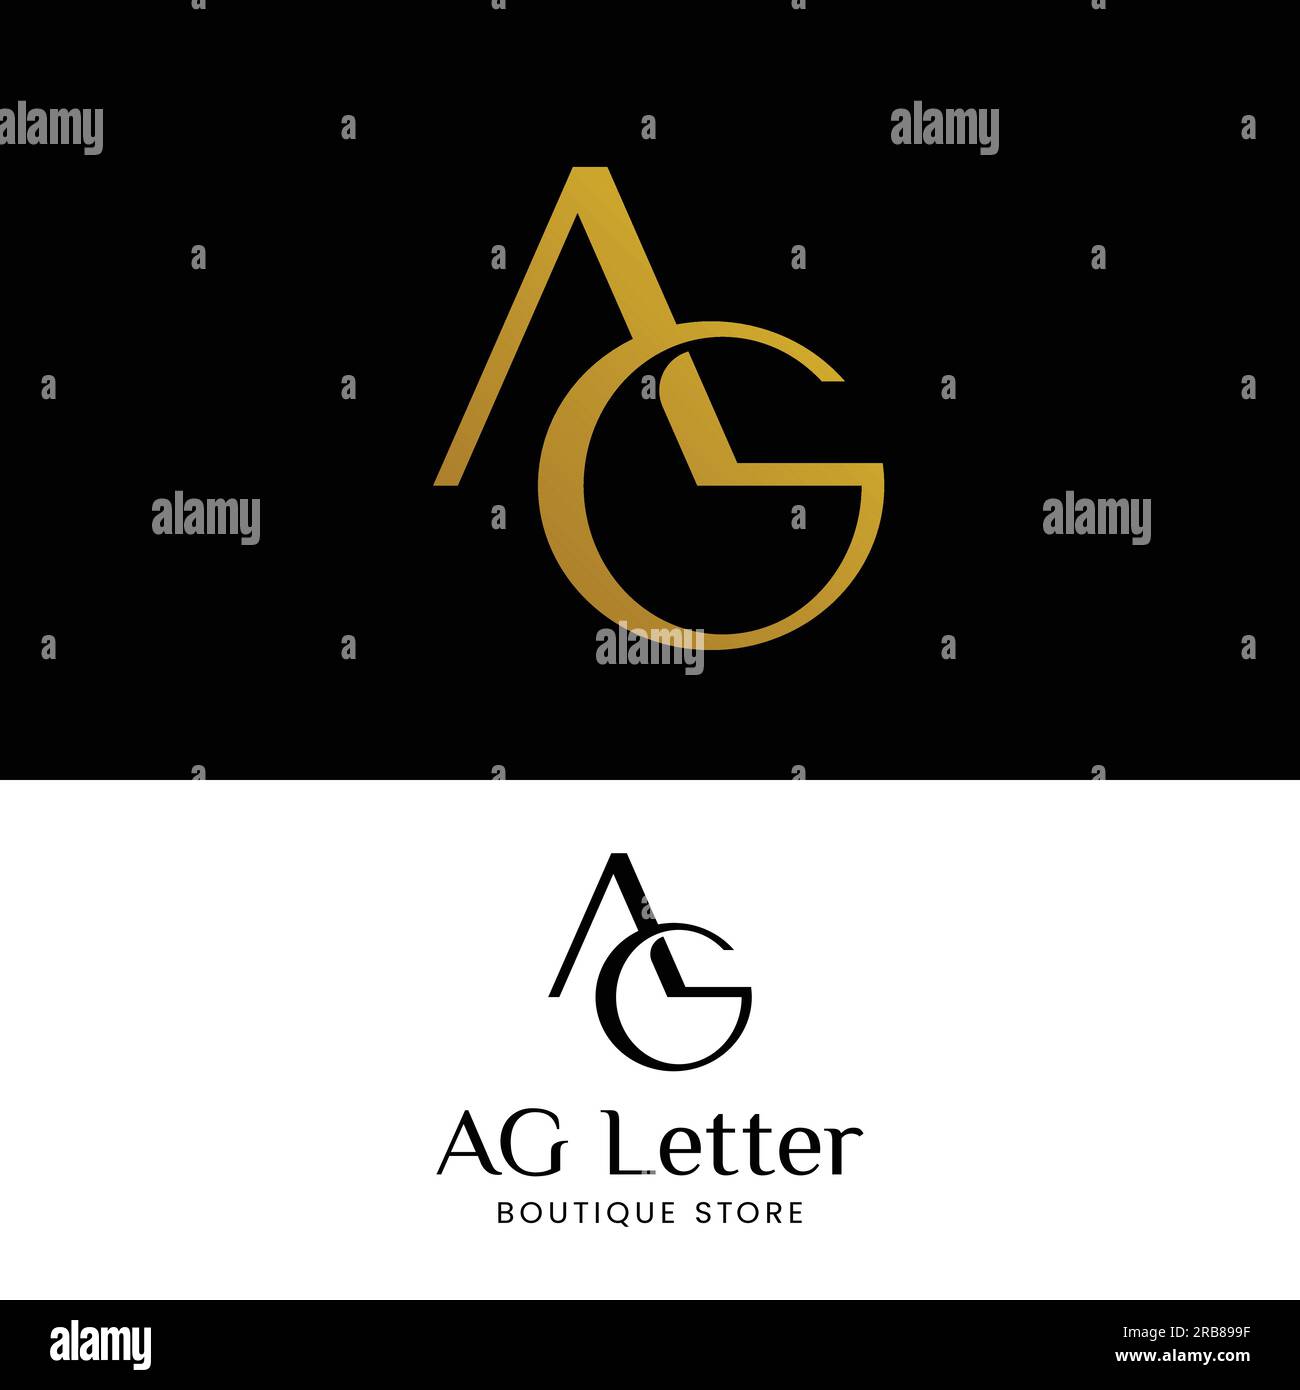 Letter Monogram A G AG GA in Simple Luxury Logo Stock Vector